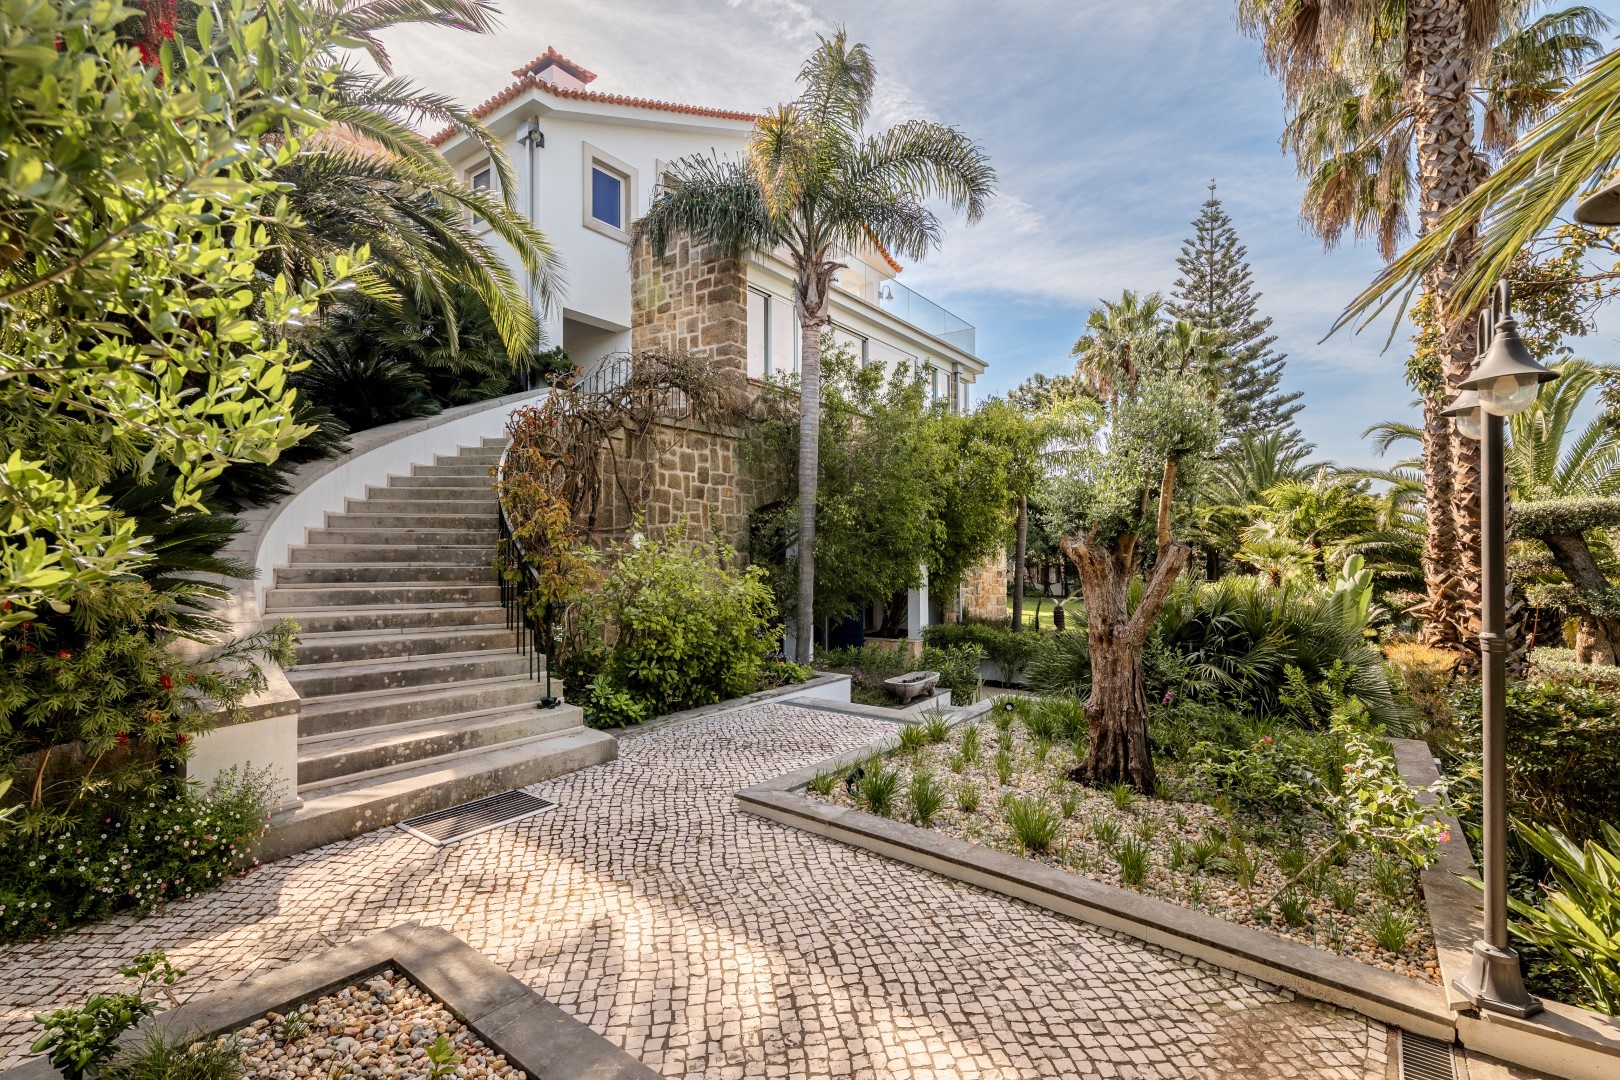 For Sale Detached Villa Estoril Cascais Portugal Mor4892nd009